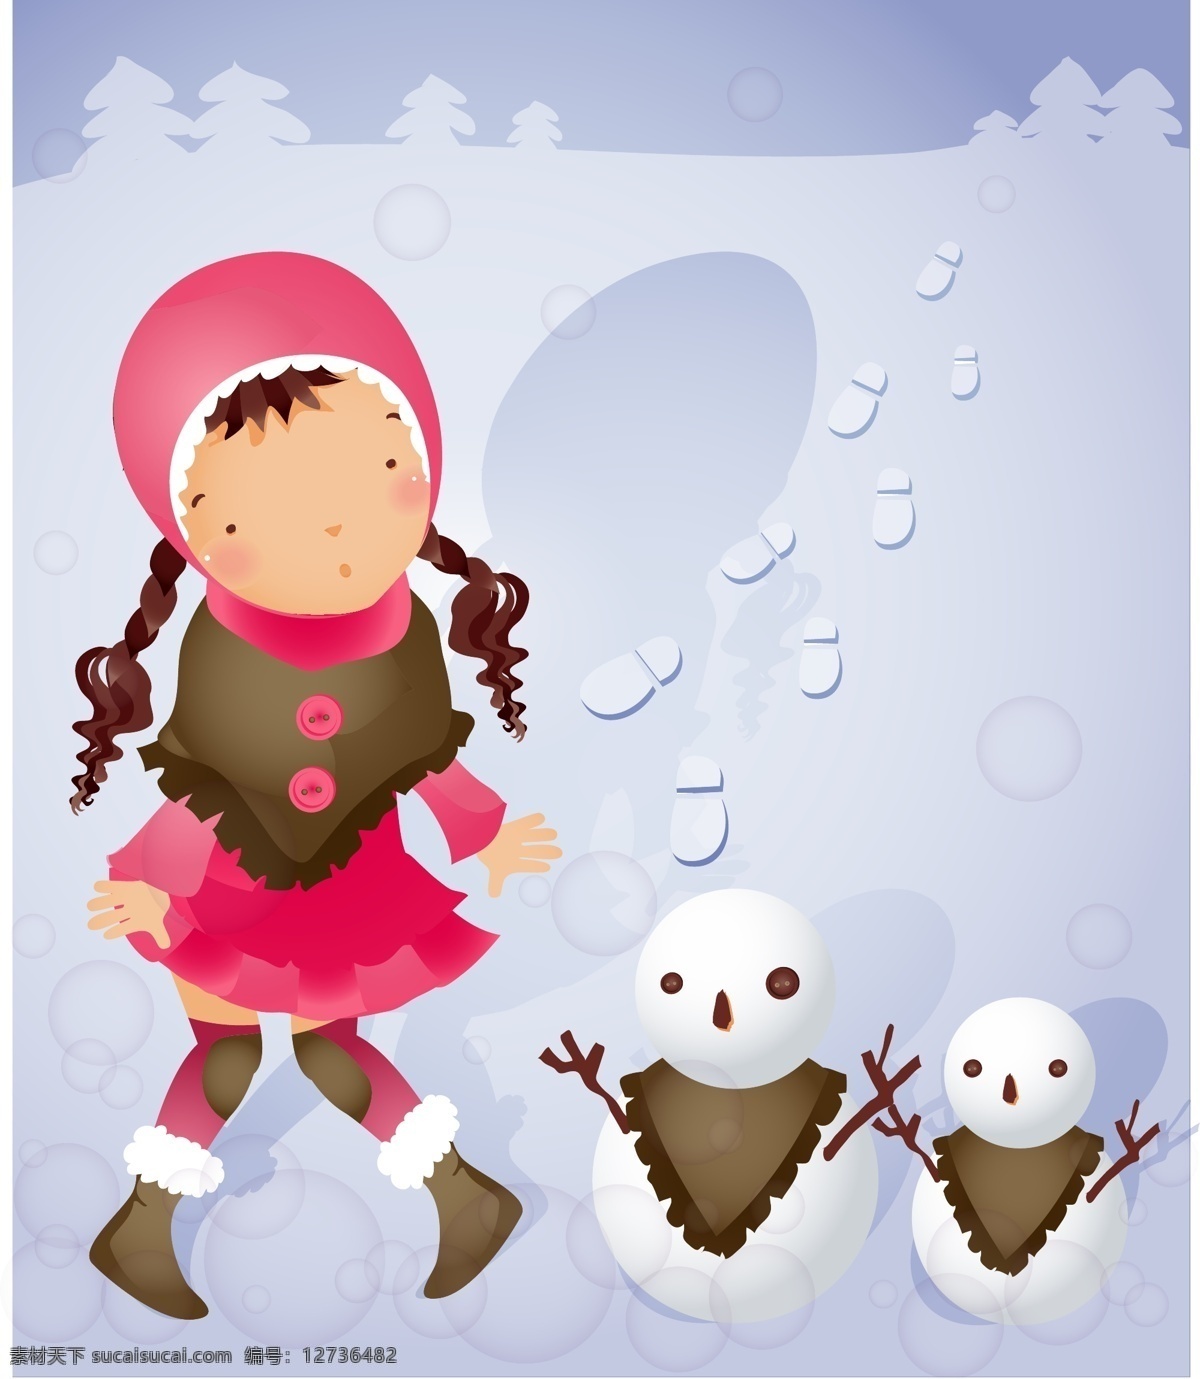 雪人 主题 iclickart 四 赛季 韩国 可爱 女孩 相册 冬天 韩国矢量素材 雪 卡通 邮件 载体材料 矢量图 矢量人物